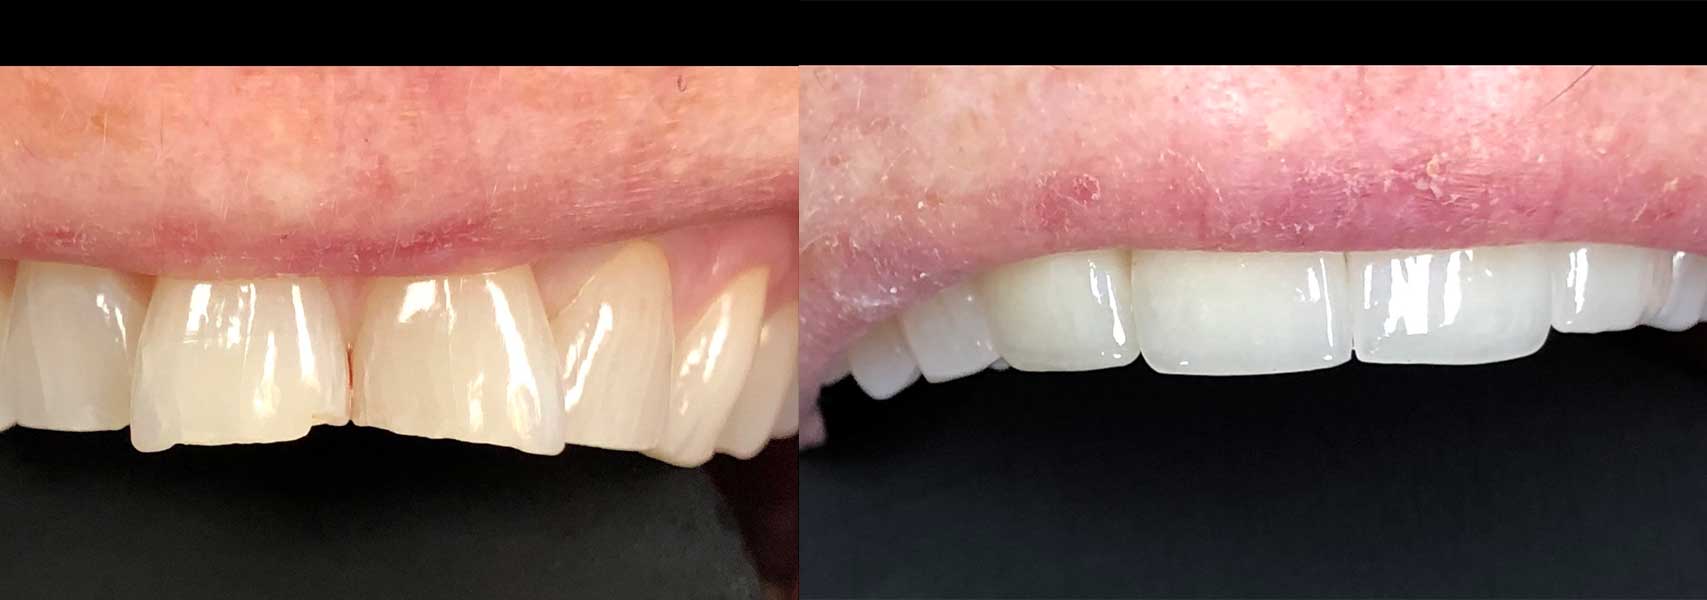 Before & after dental veneers